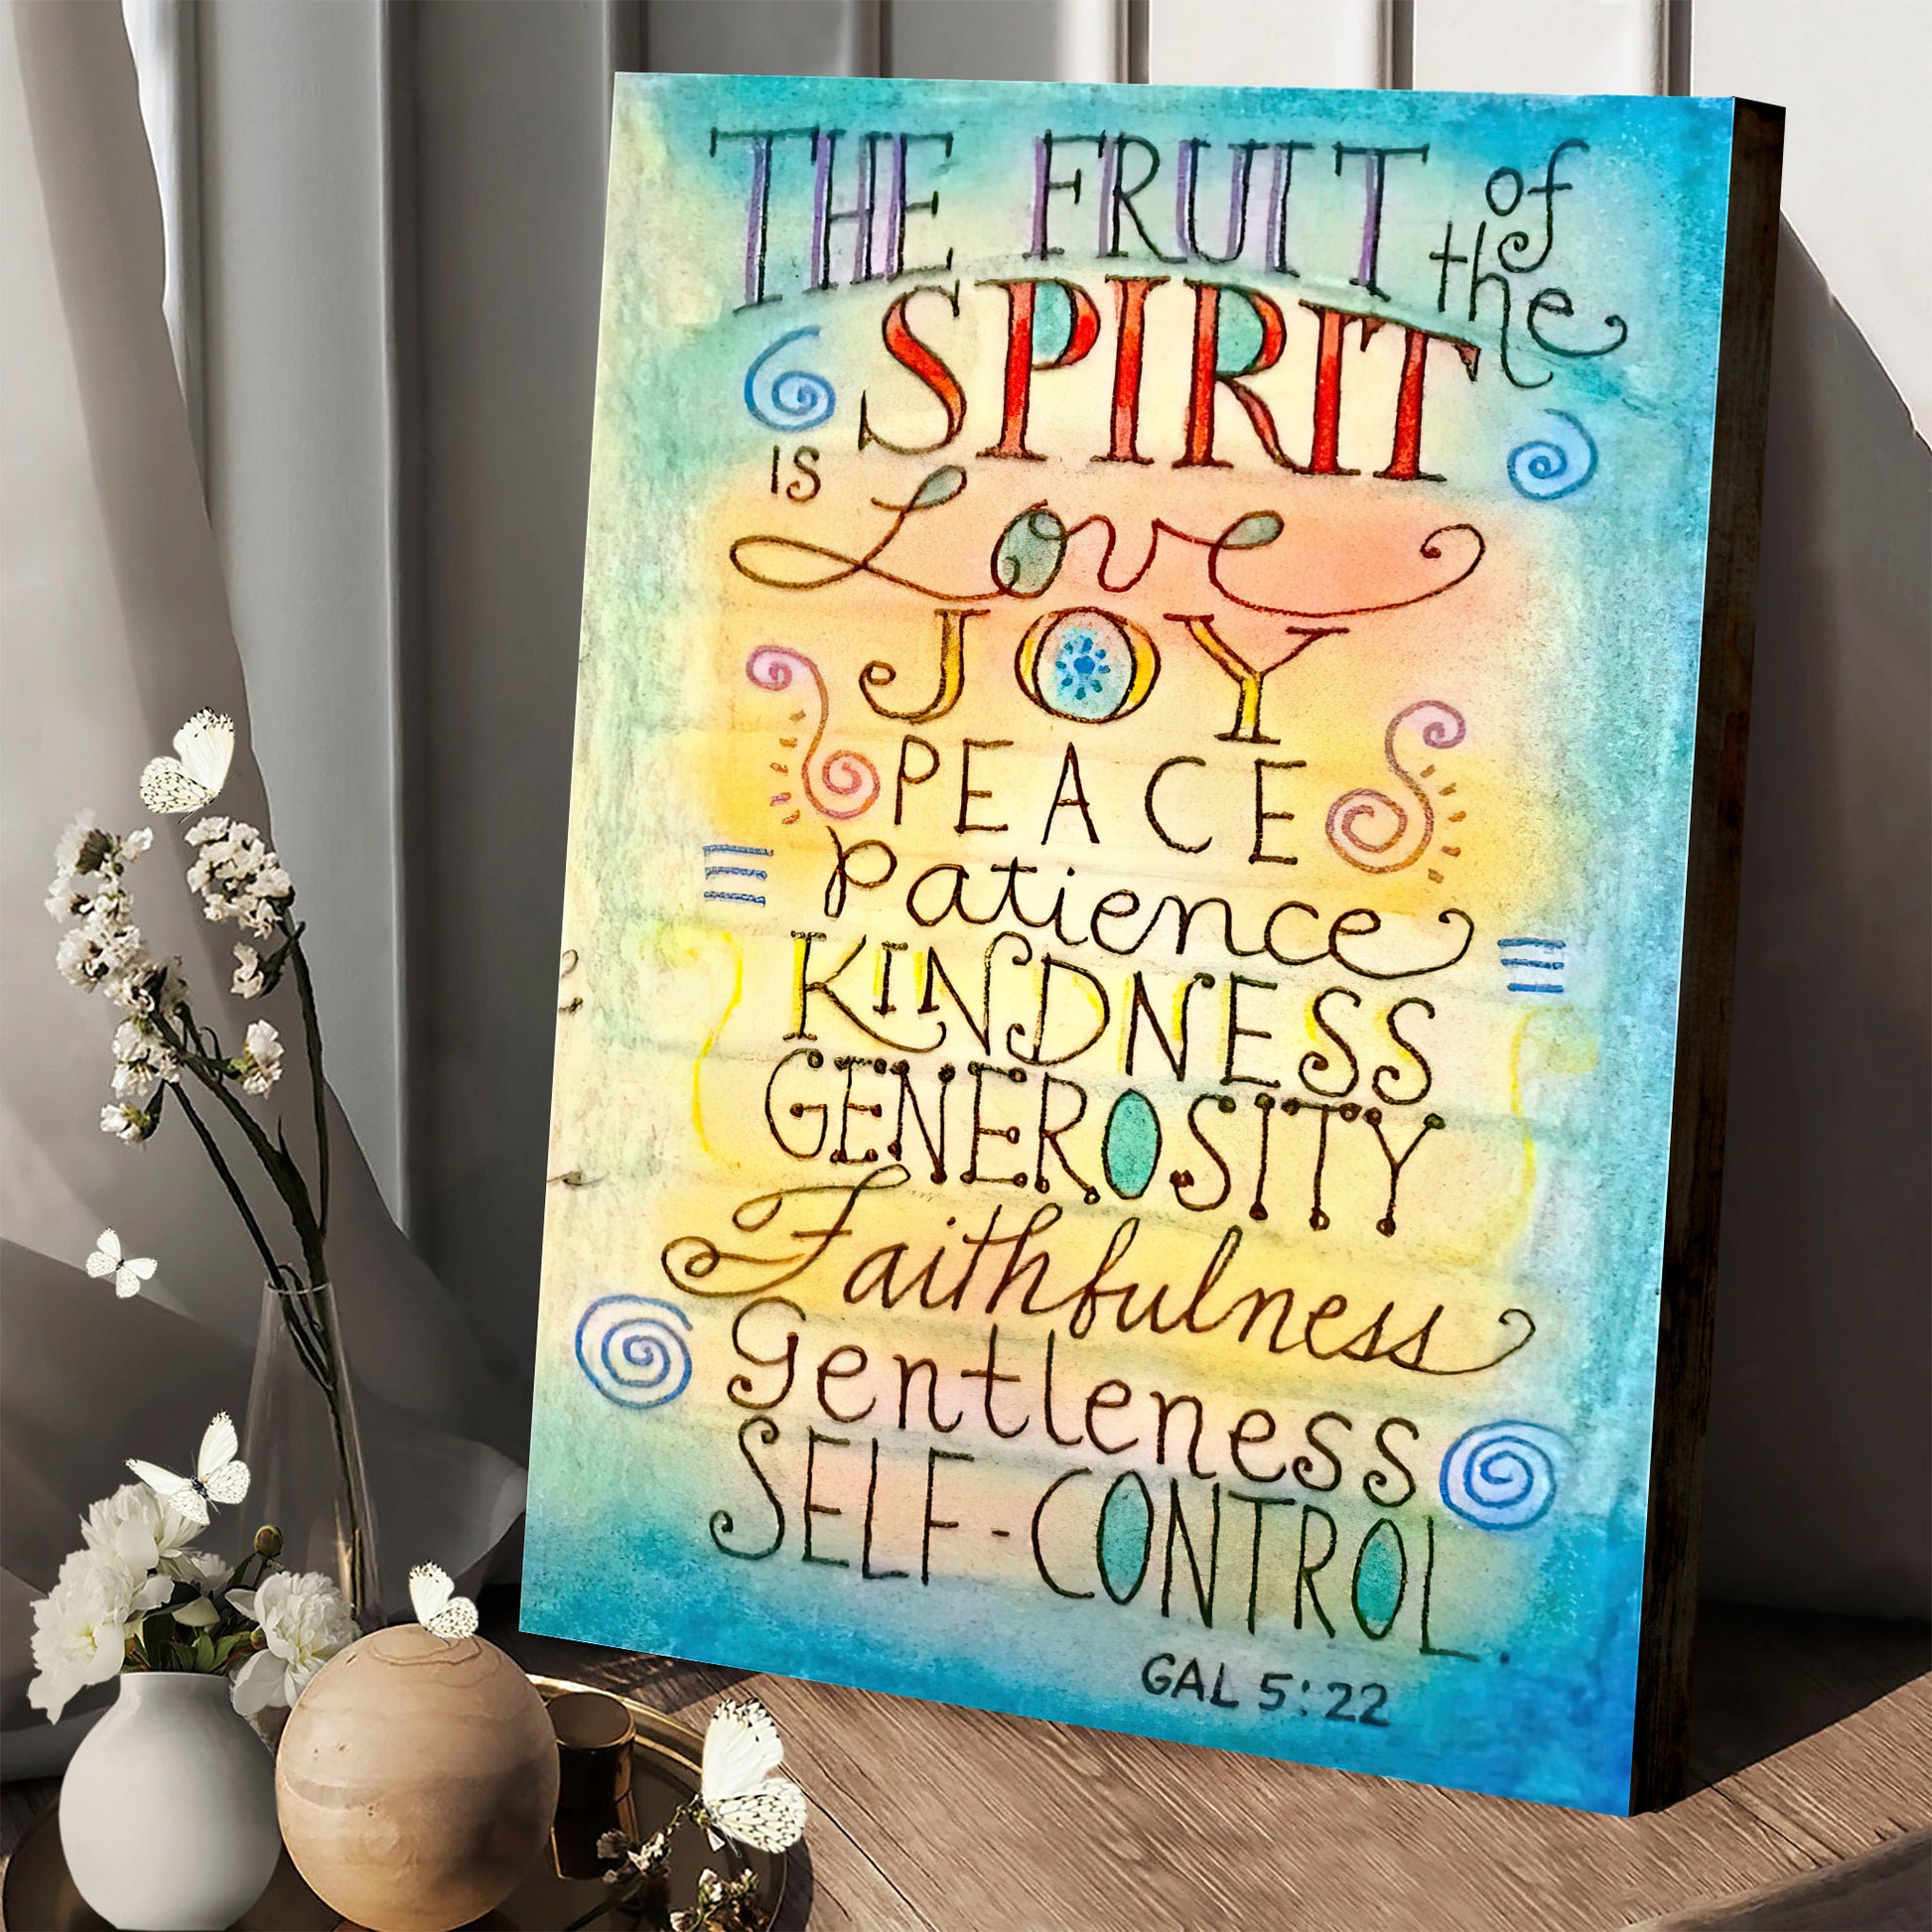 Fruit Of The Spirit Canvas Art - Bible Verse Wall Art - Christian Home Decor